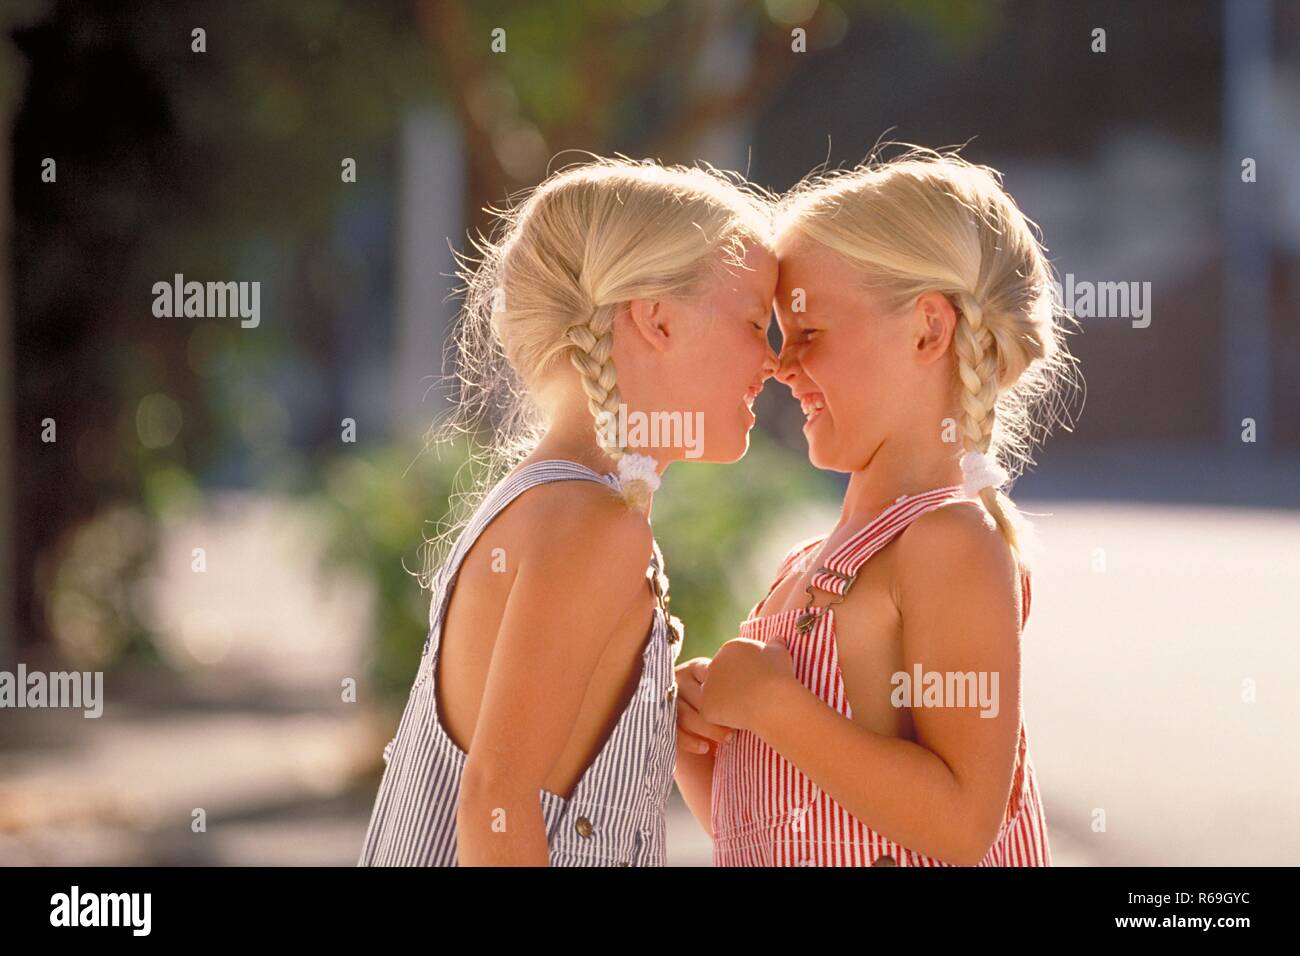 Portrait, Halbfigur, Profil von zwei lachenden 5 Jahre alten  Zwillings-Maedchen mit blonden geflochtenen Zoepfen bekleidet mit blau und rot-weiss gestreiften Latzhosen, die die Nasen aneinander reiben Stock Photo